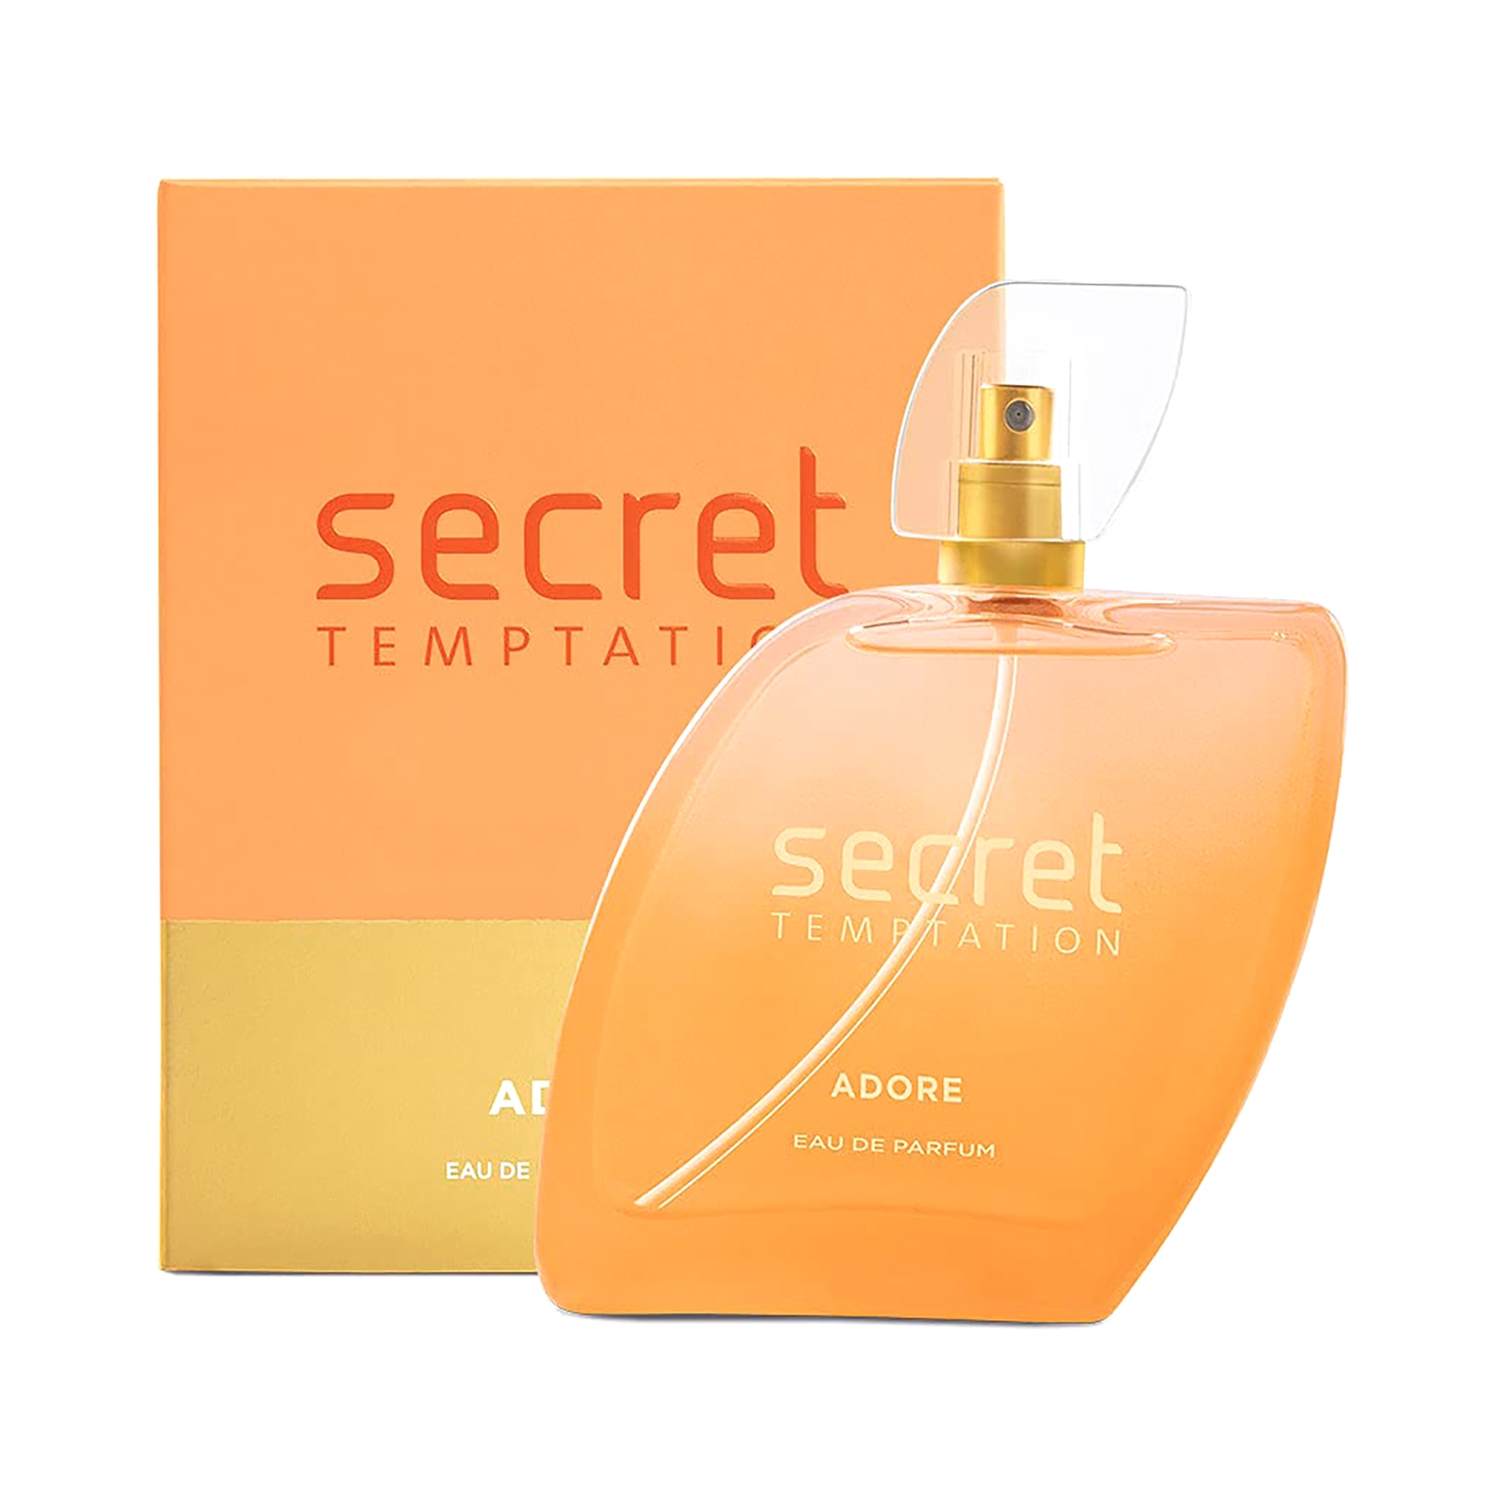 Secret Temptation | Secret Temptation Adore Eau De Parfum (100ml)